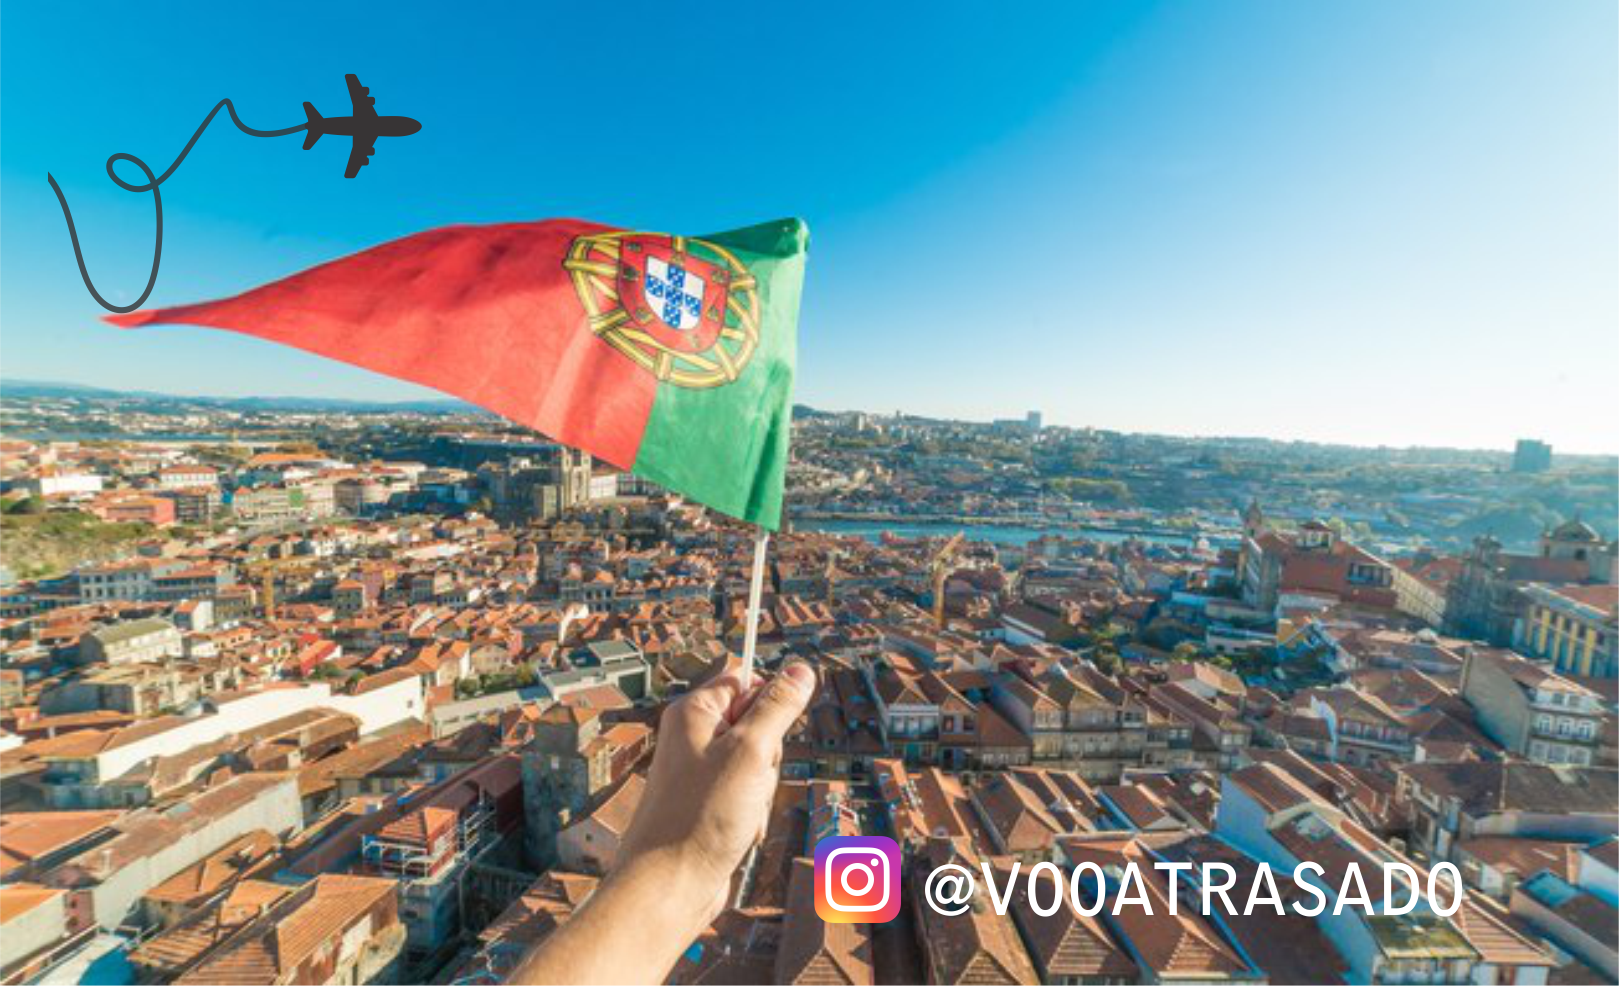 Empresa Voo Atrasado mediou acordo de R$ 8.000 para casal em viagem para Portugal